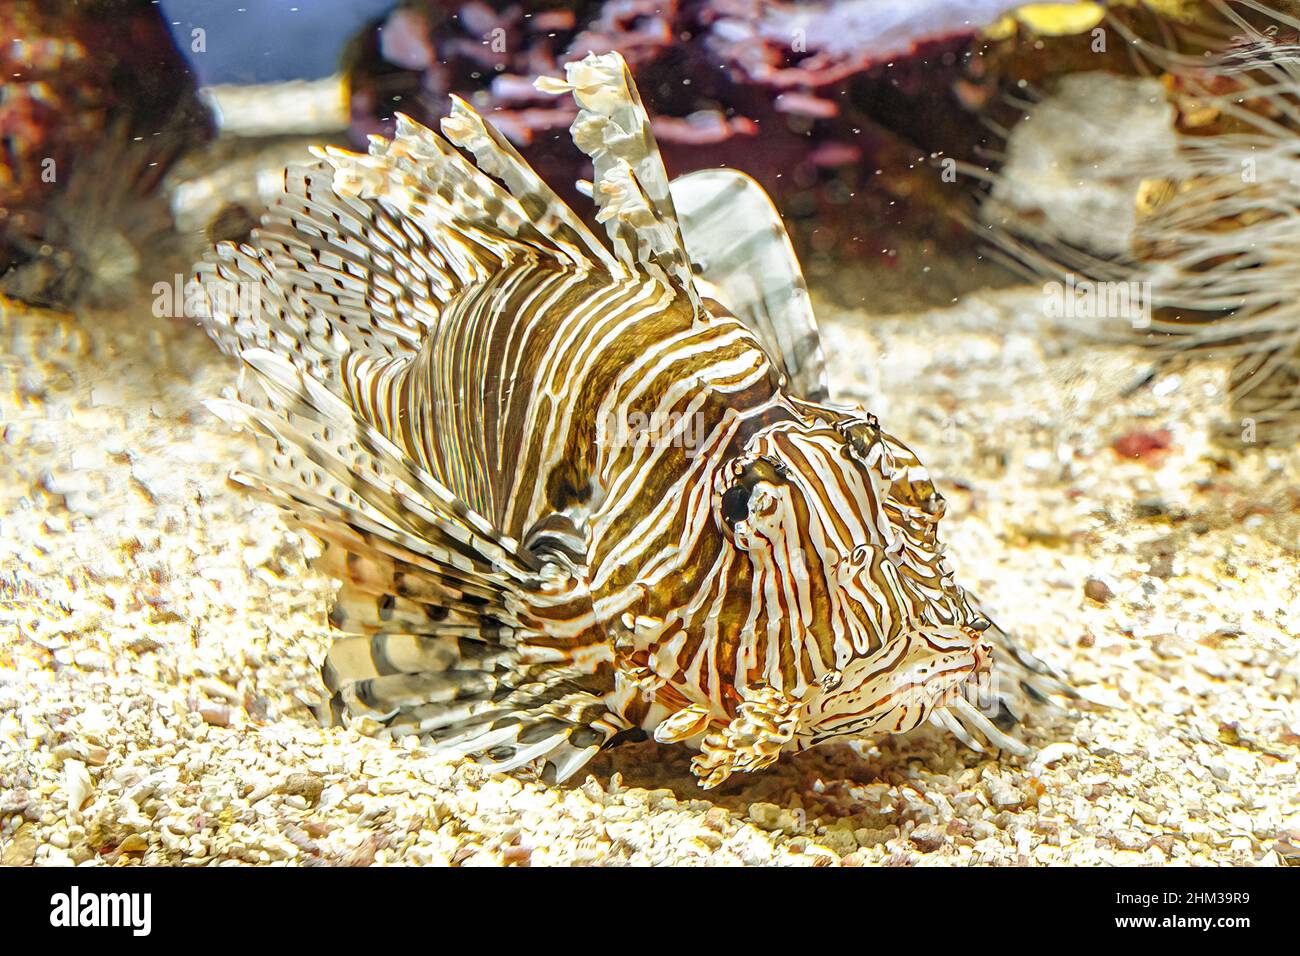 Nahaufnahme eines Lionfish des Aquariums mit giftigen Flossen in Korallentiefe. Giftige Raubfische der Pterois Miles-Arten. Teufelsfecht des Indischen Ozeans Stockfoto